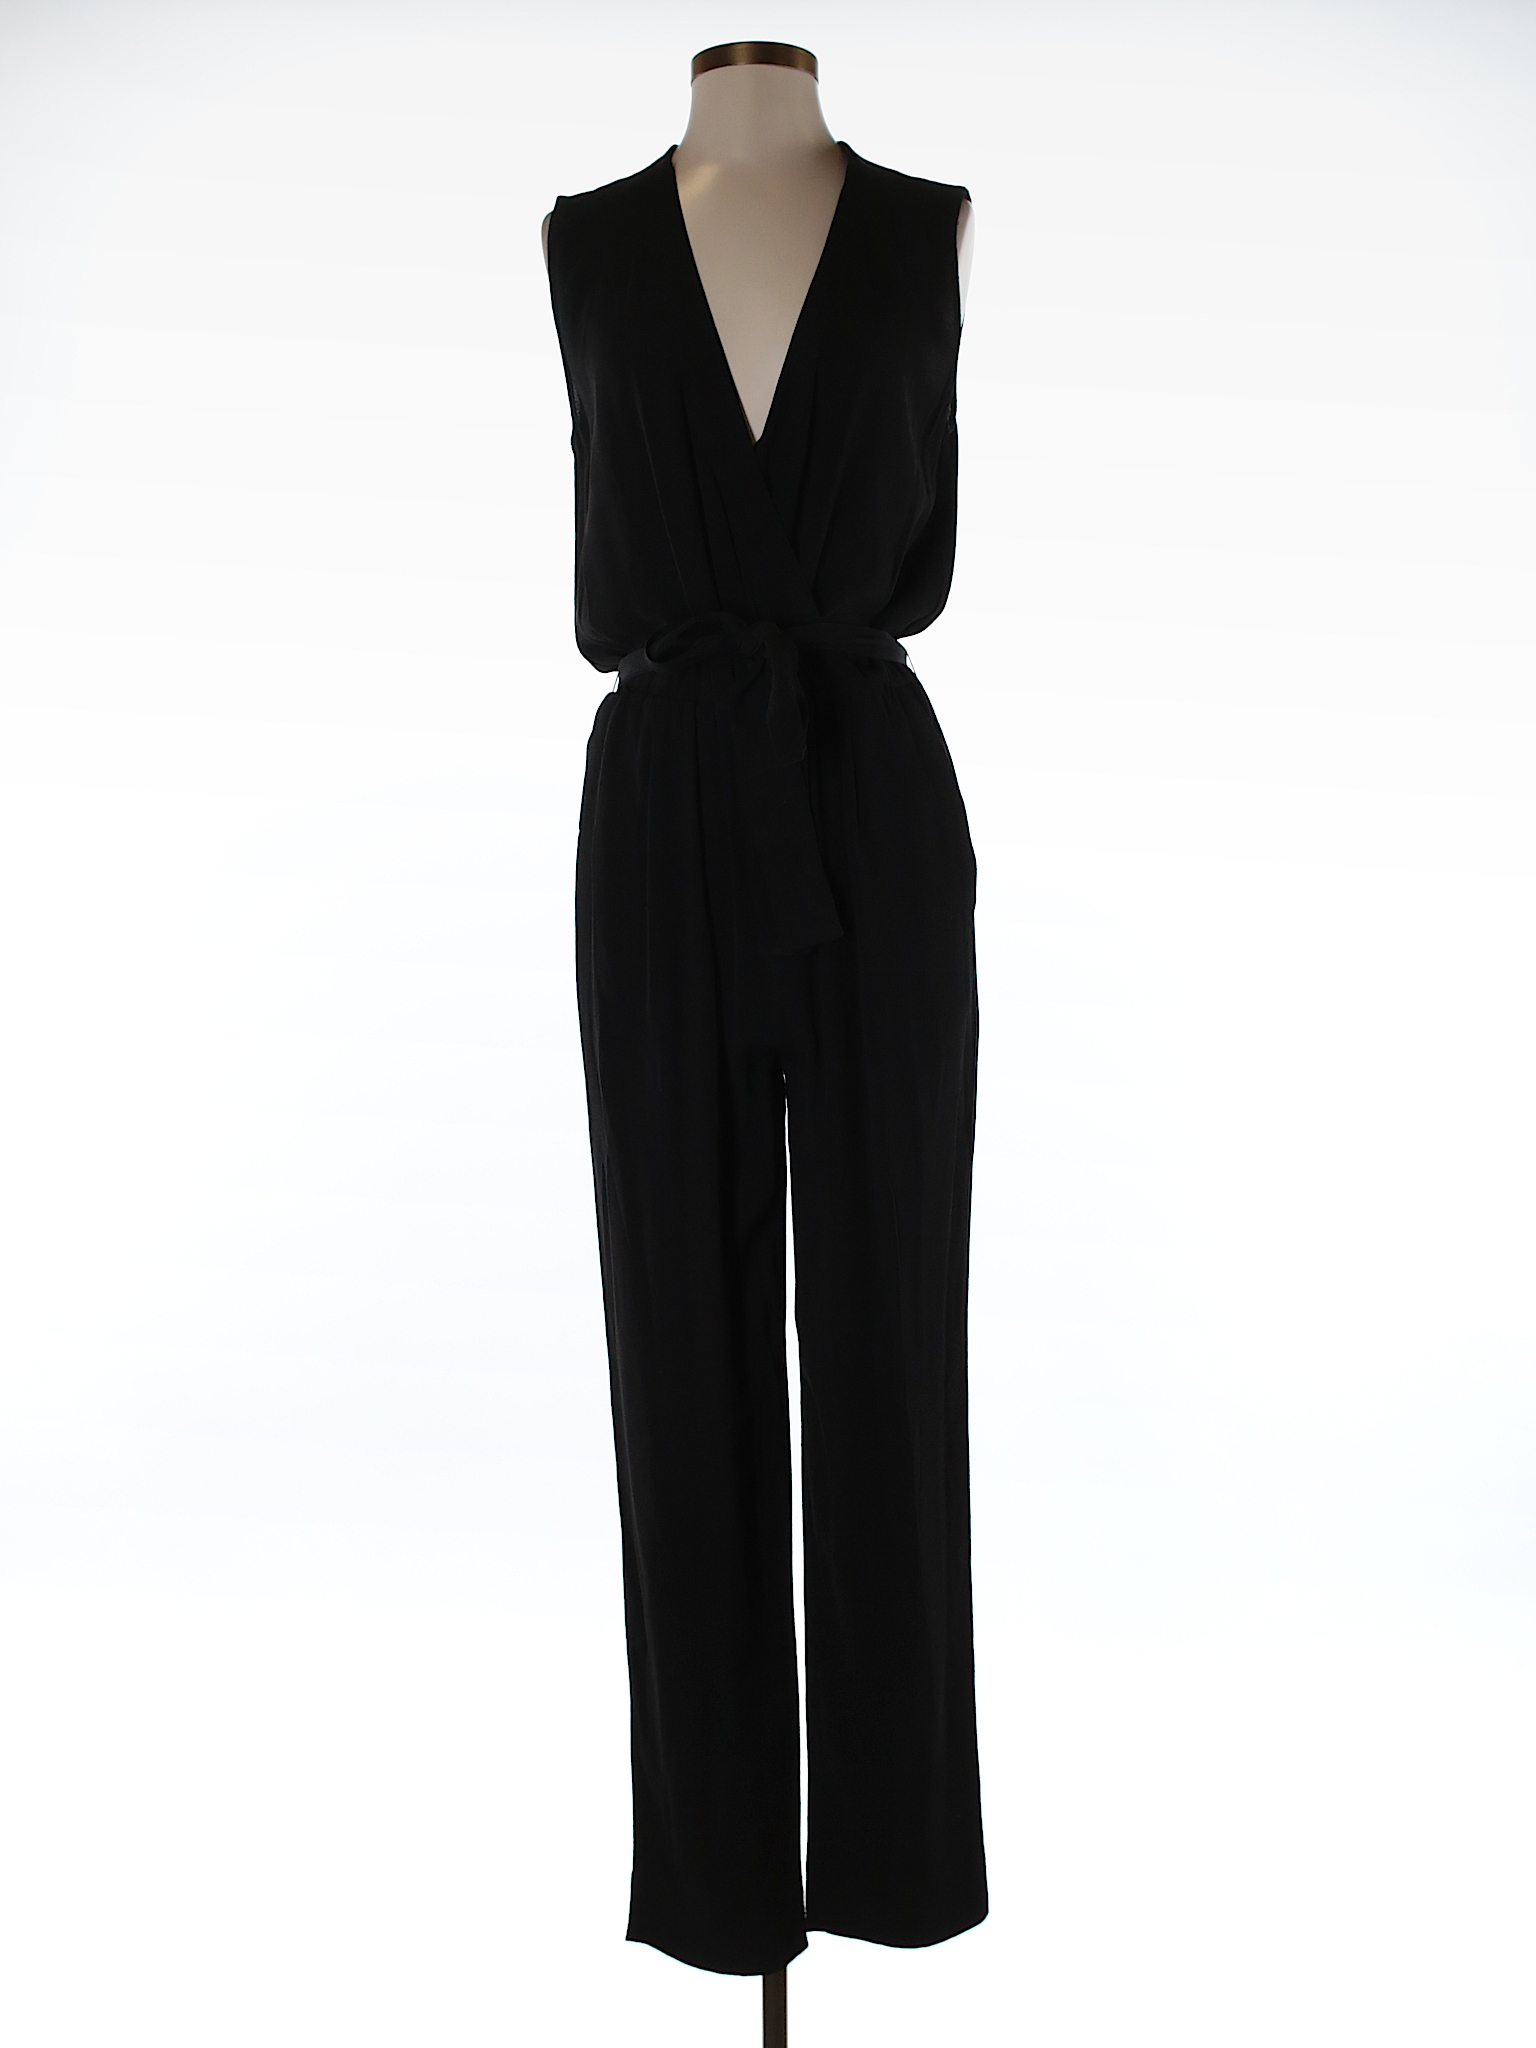 Diane von Furstenberg 100% Viscose Solid Black Jumpsuit Size 4 - 80% ...